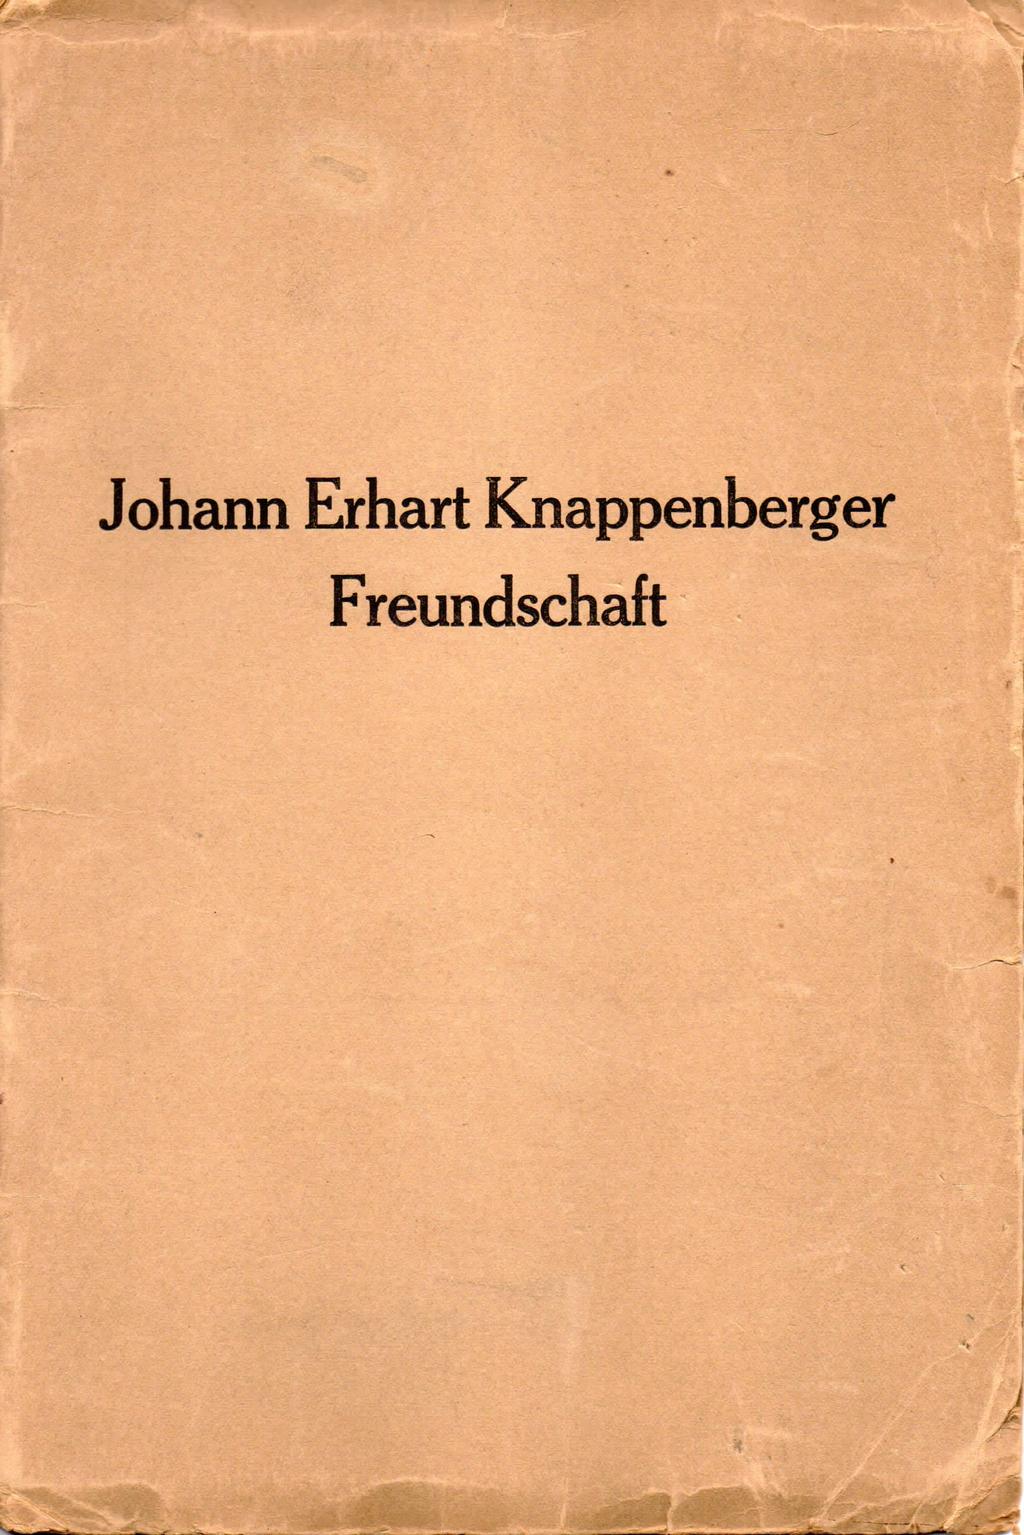 Johann Erhart